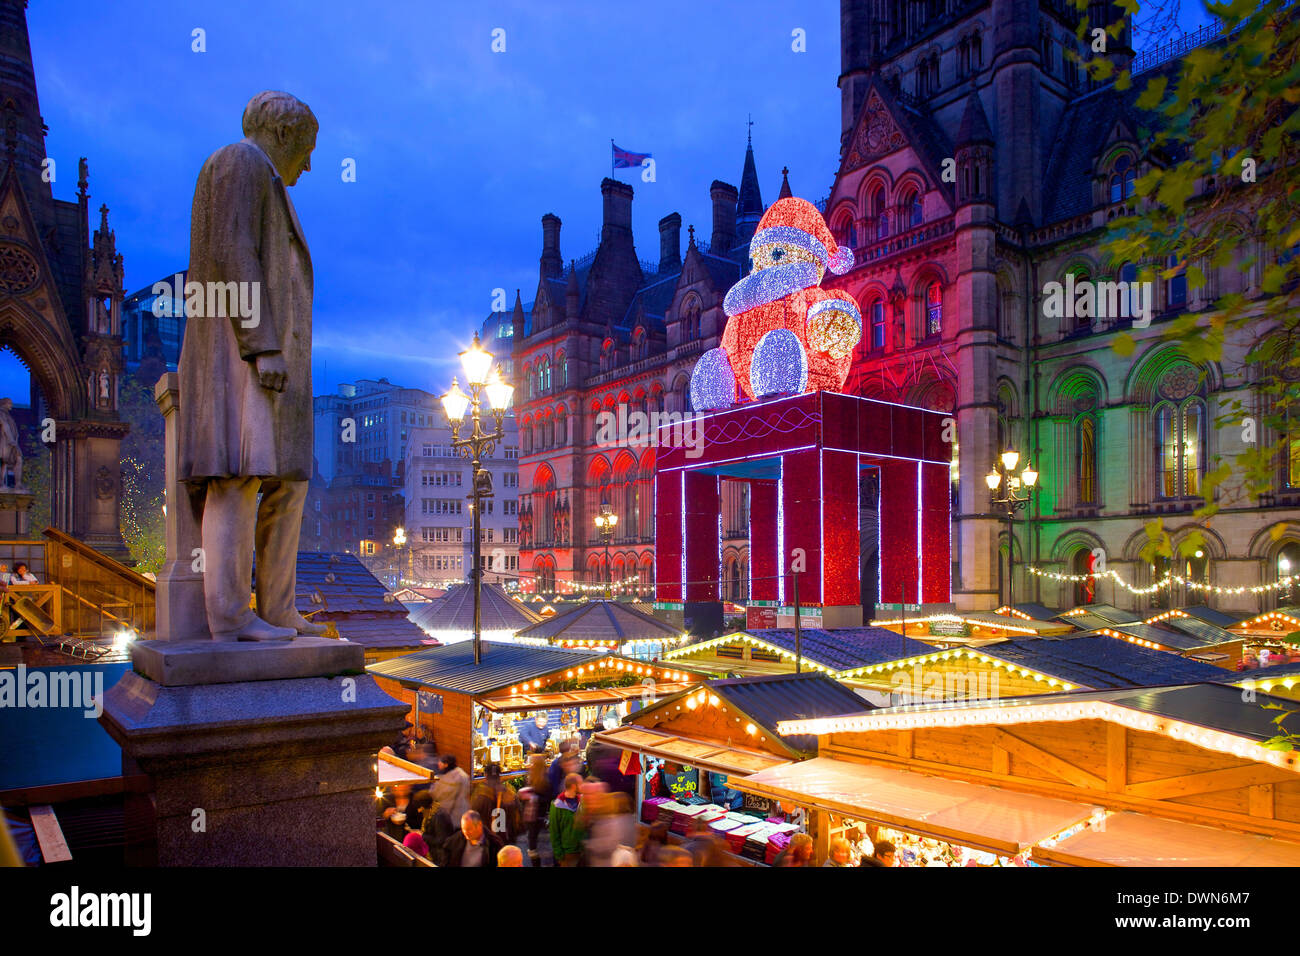 Marché de Noël et l'Hôtel de Ville, place Albert, Manchester, Angleterre, Royaume-Uni, Europe Banque D'Images